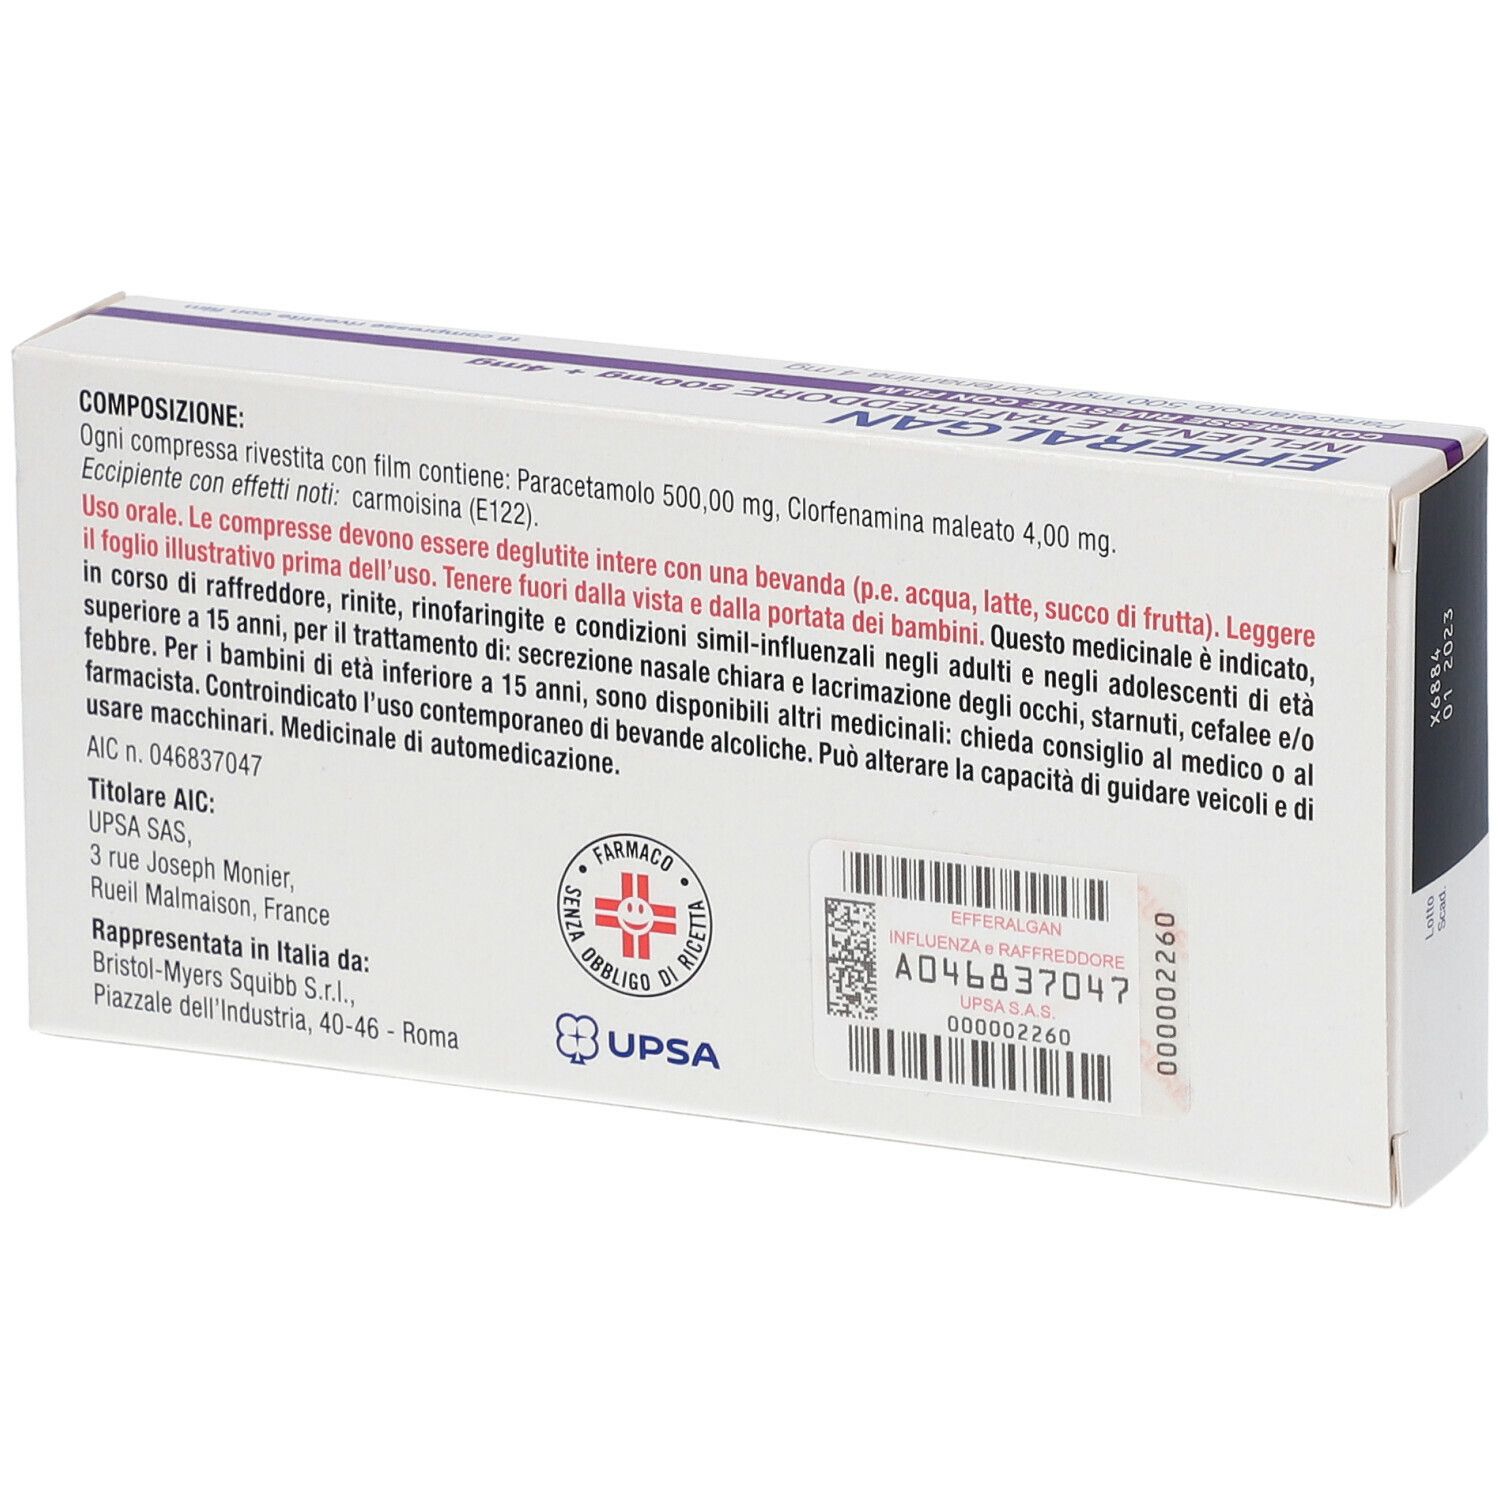 UPSA EFFERALGAN Influenza e Raffreddore 500mg + 4mg Compresse Rivestite con Film